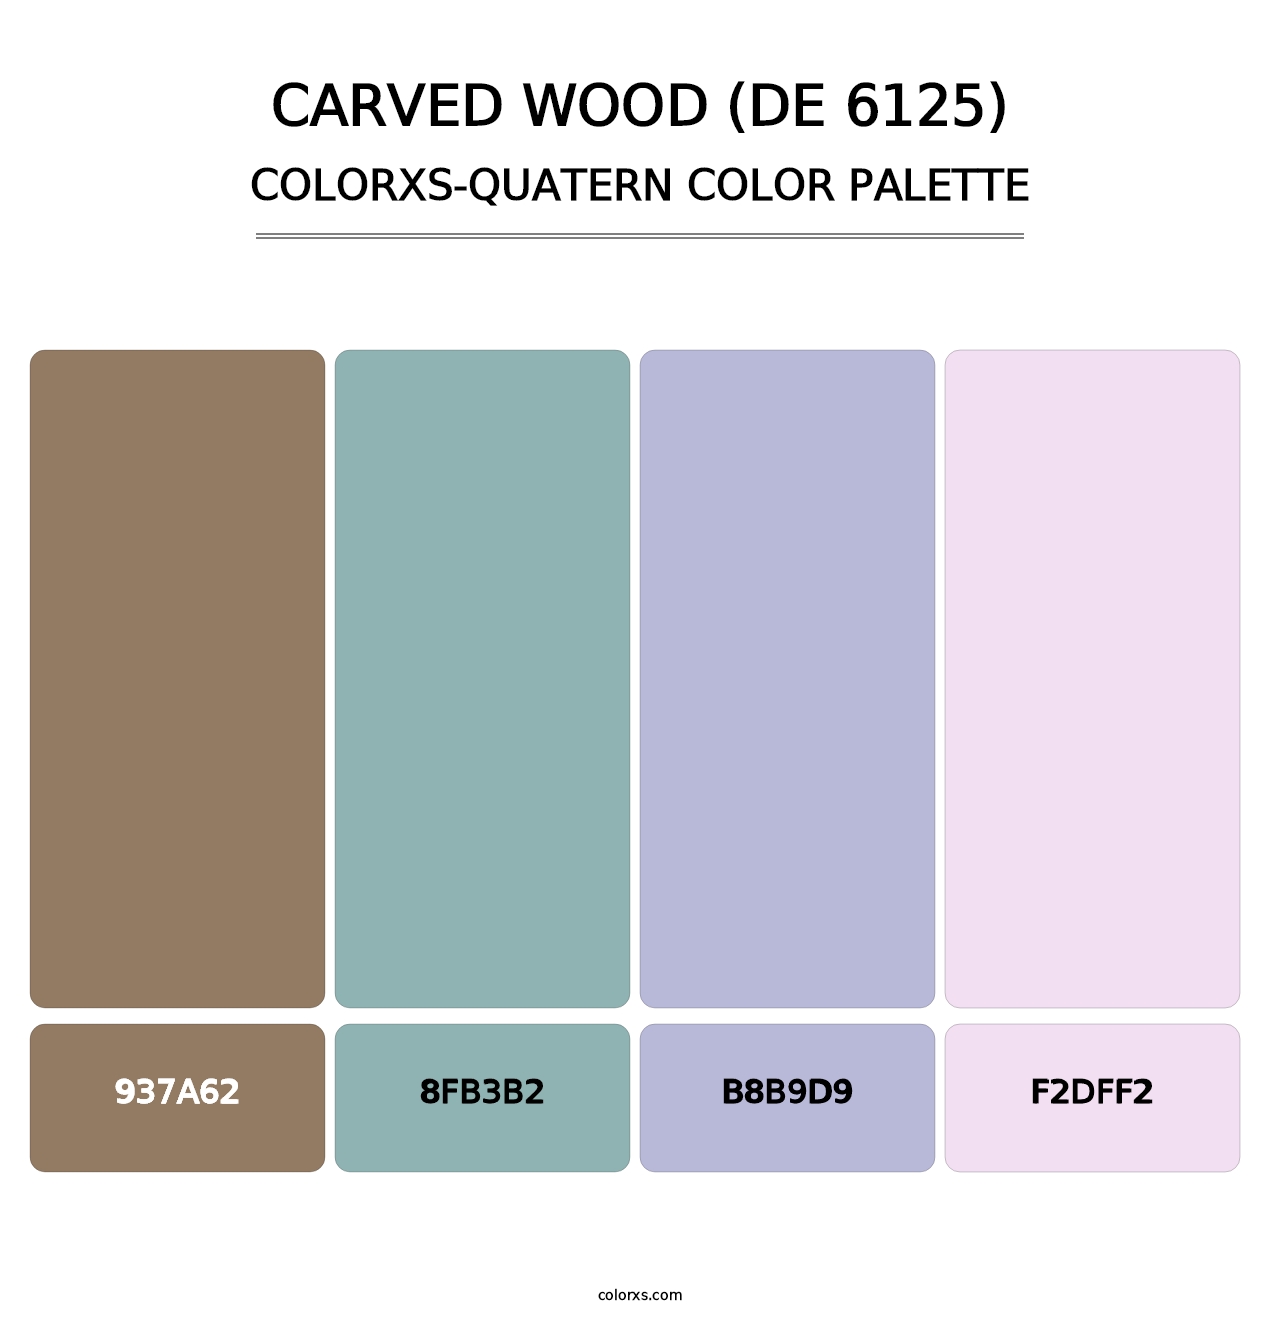 Carved Wood (DE 6125) - Colorxs Quatern Palette